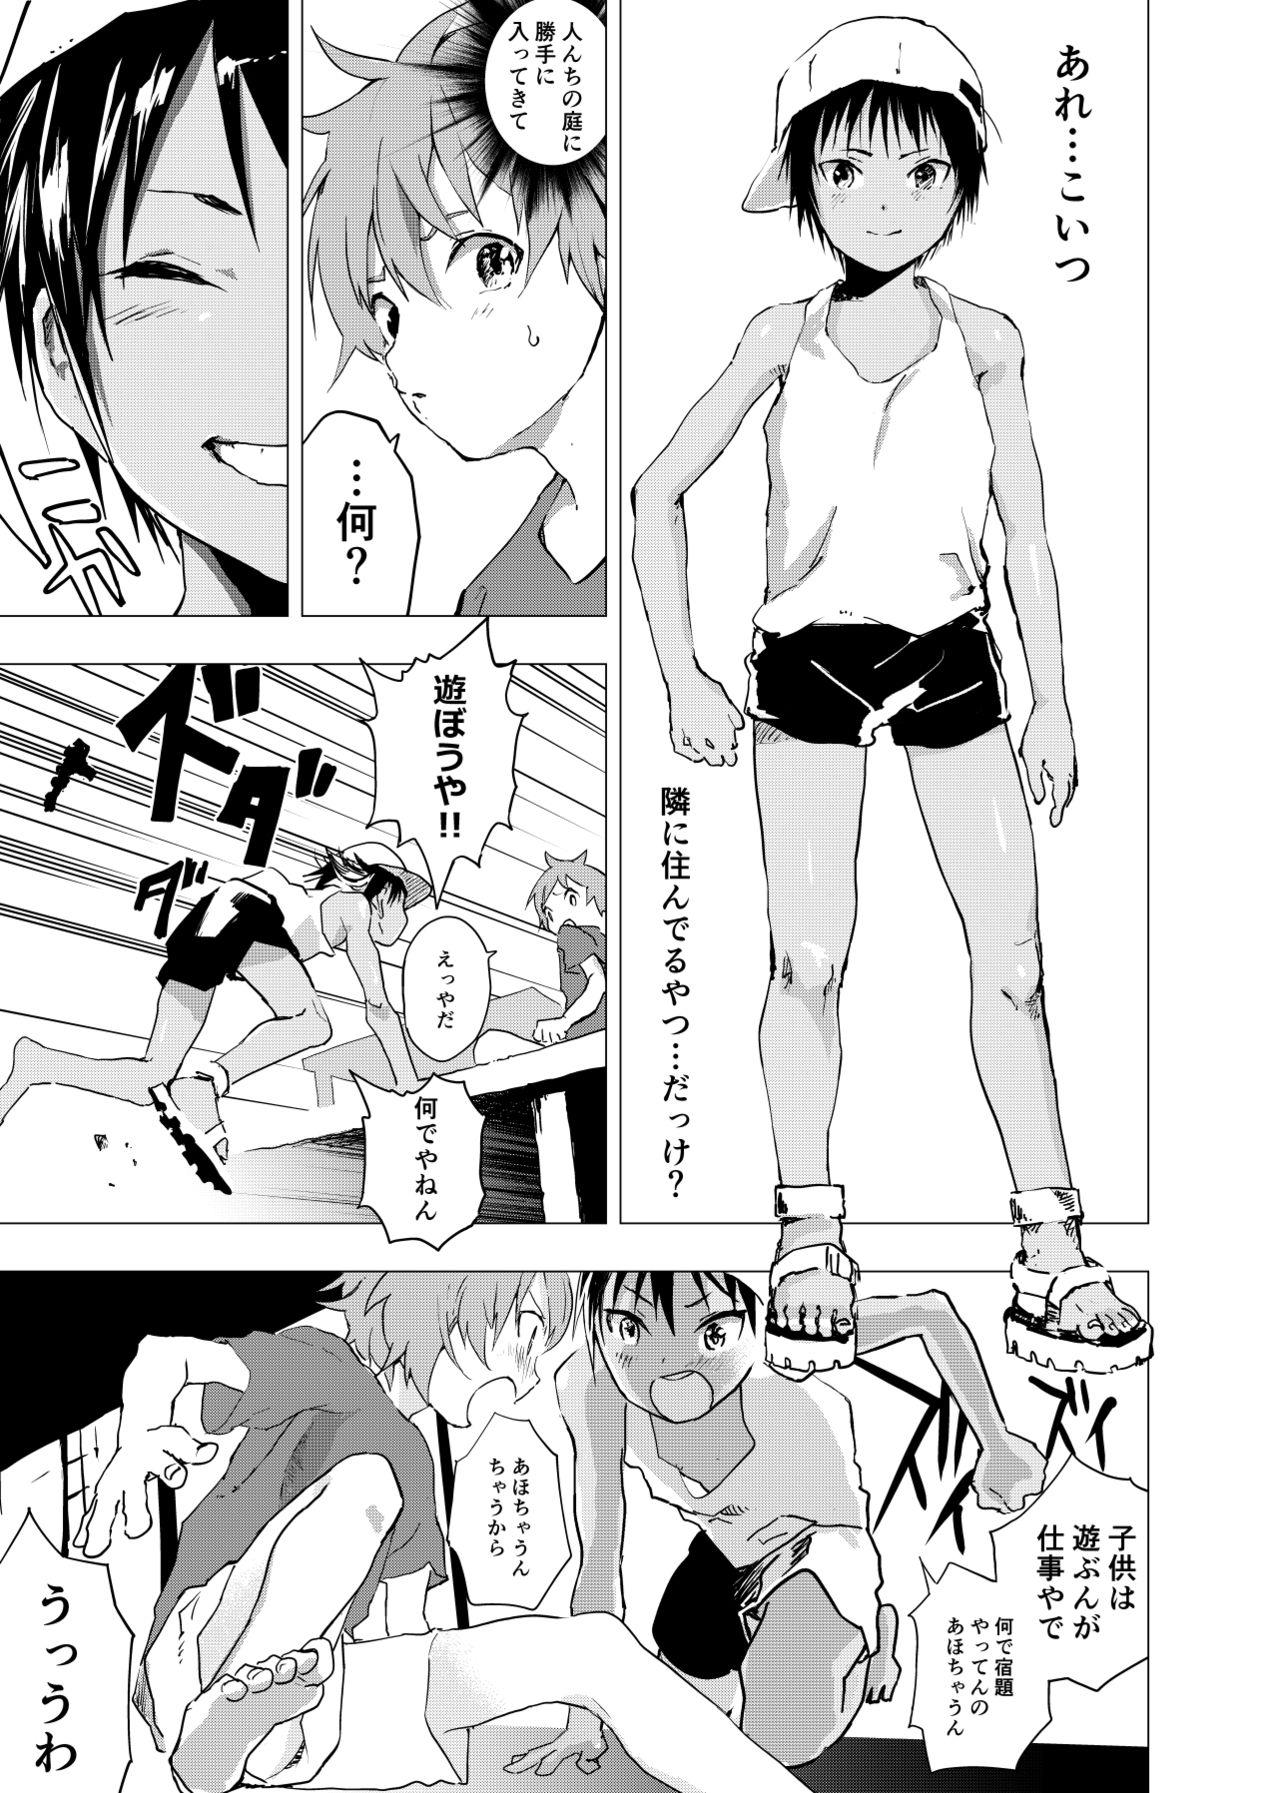 Family Roleplay Inaka no Uke Shounen to Tokai no Seme Shounen no Ero Manga 1-4 Camgirl - Page 3